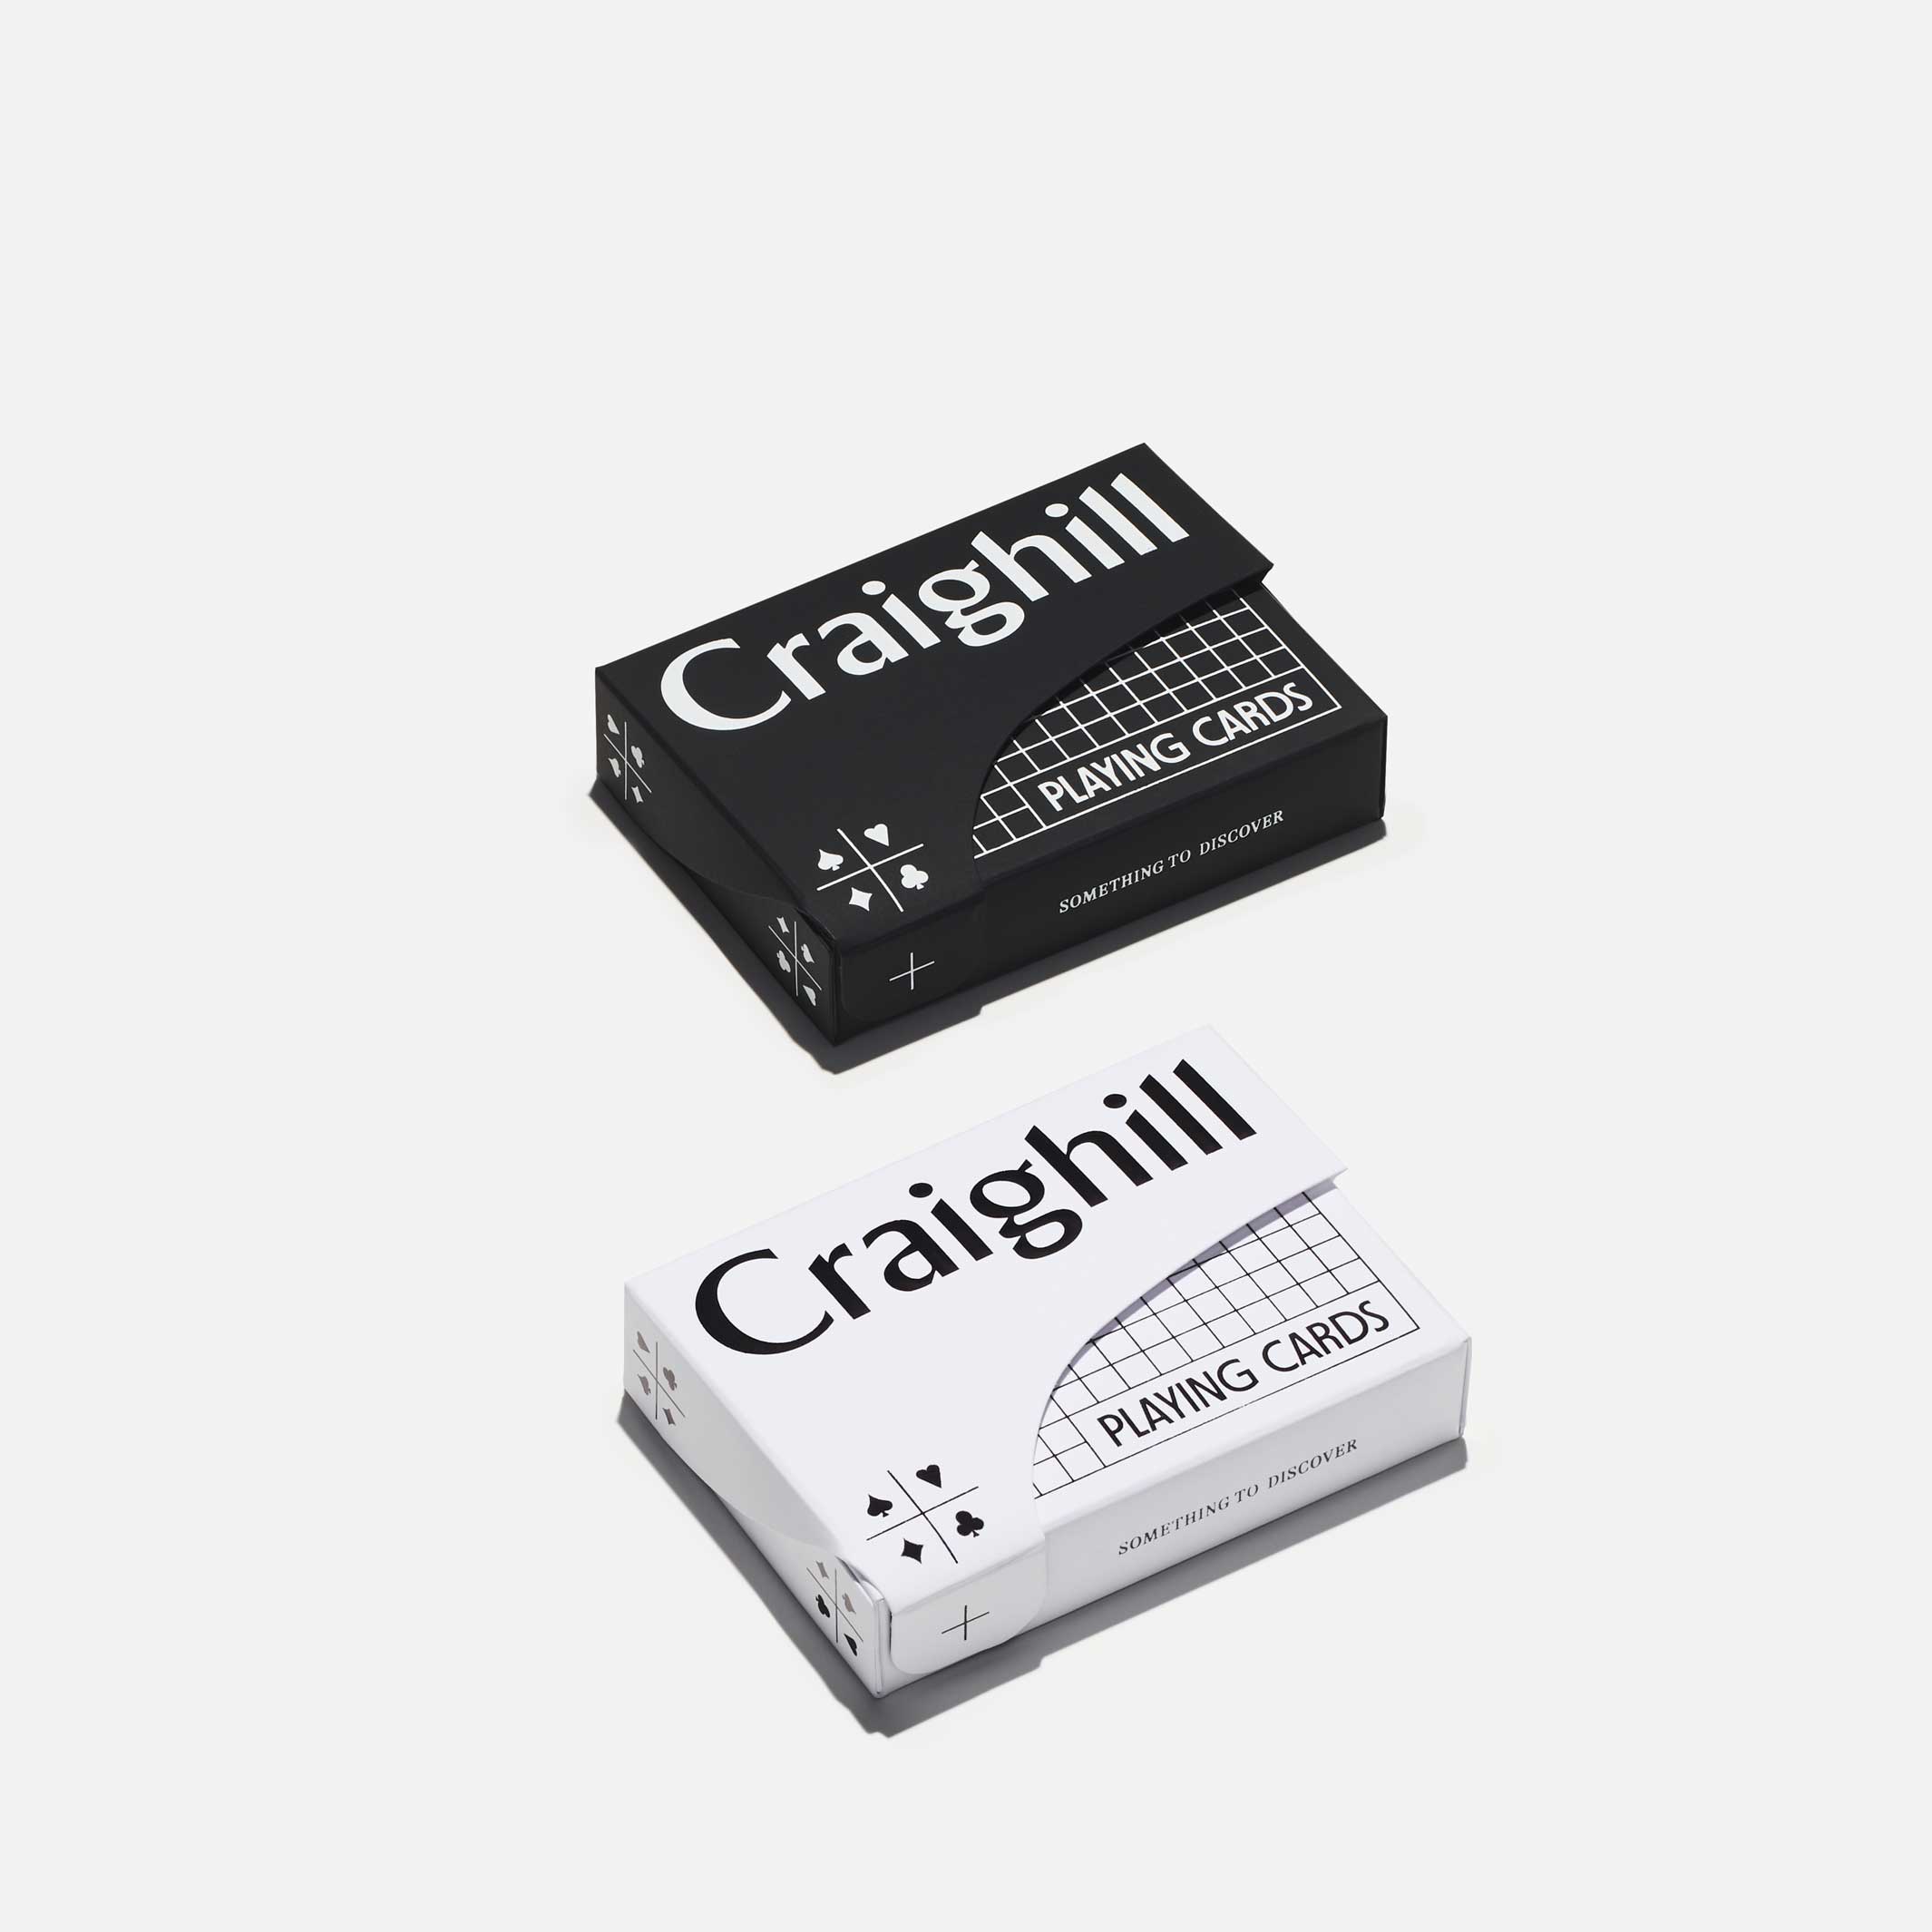 PLAYING CARDS | Schwarzes SPIEL-KARTEN in schwarzer Verpackung | Craighill